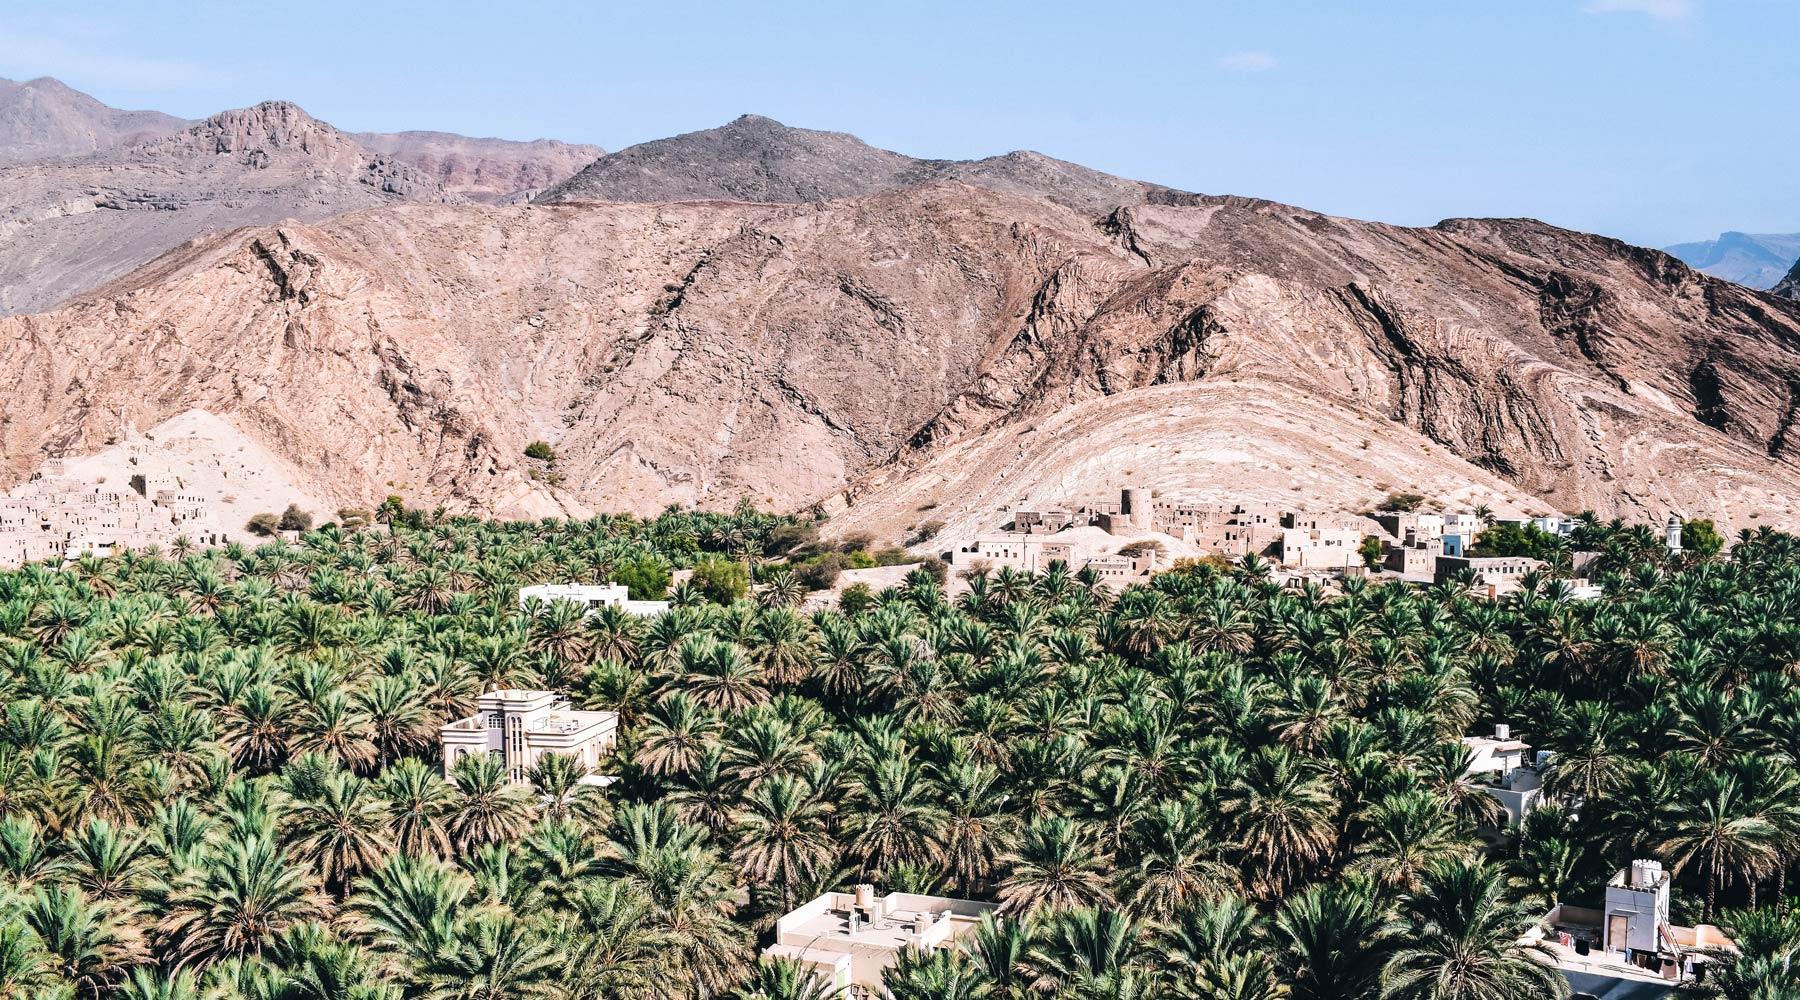 Why Visit Salalah & Southern Oman?